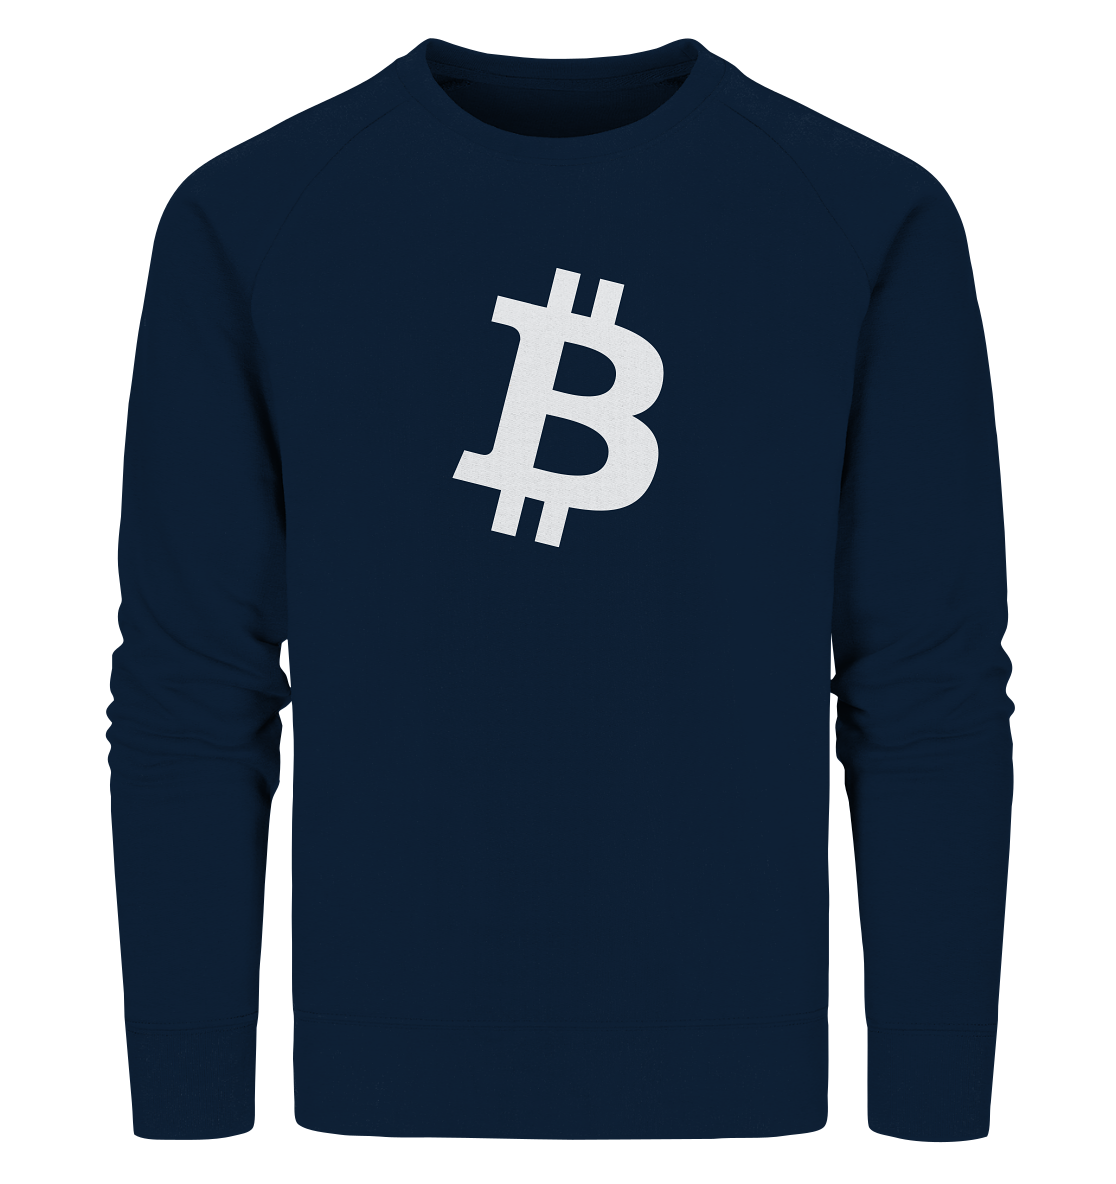 Bitcoin "simple B white" - Organic Sweatshirt